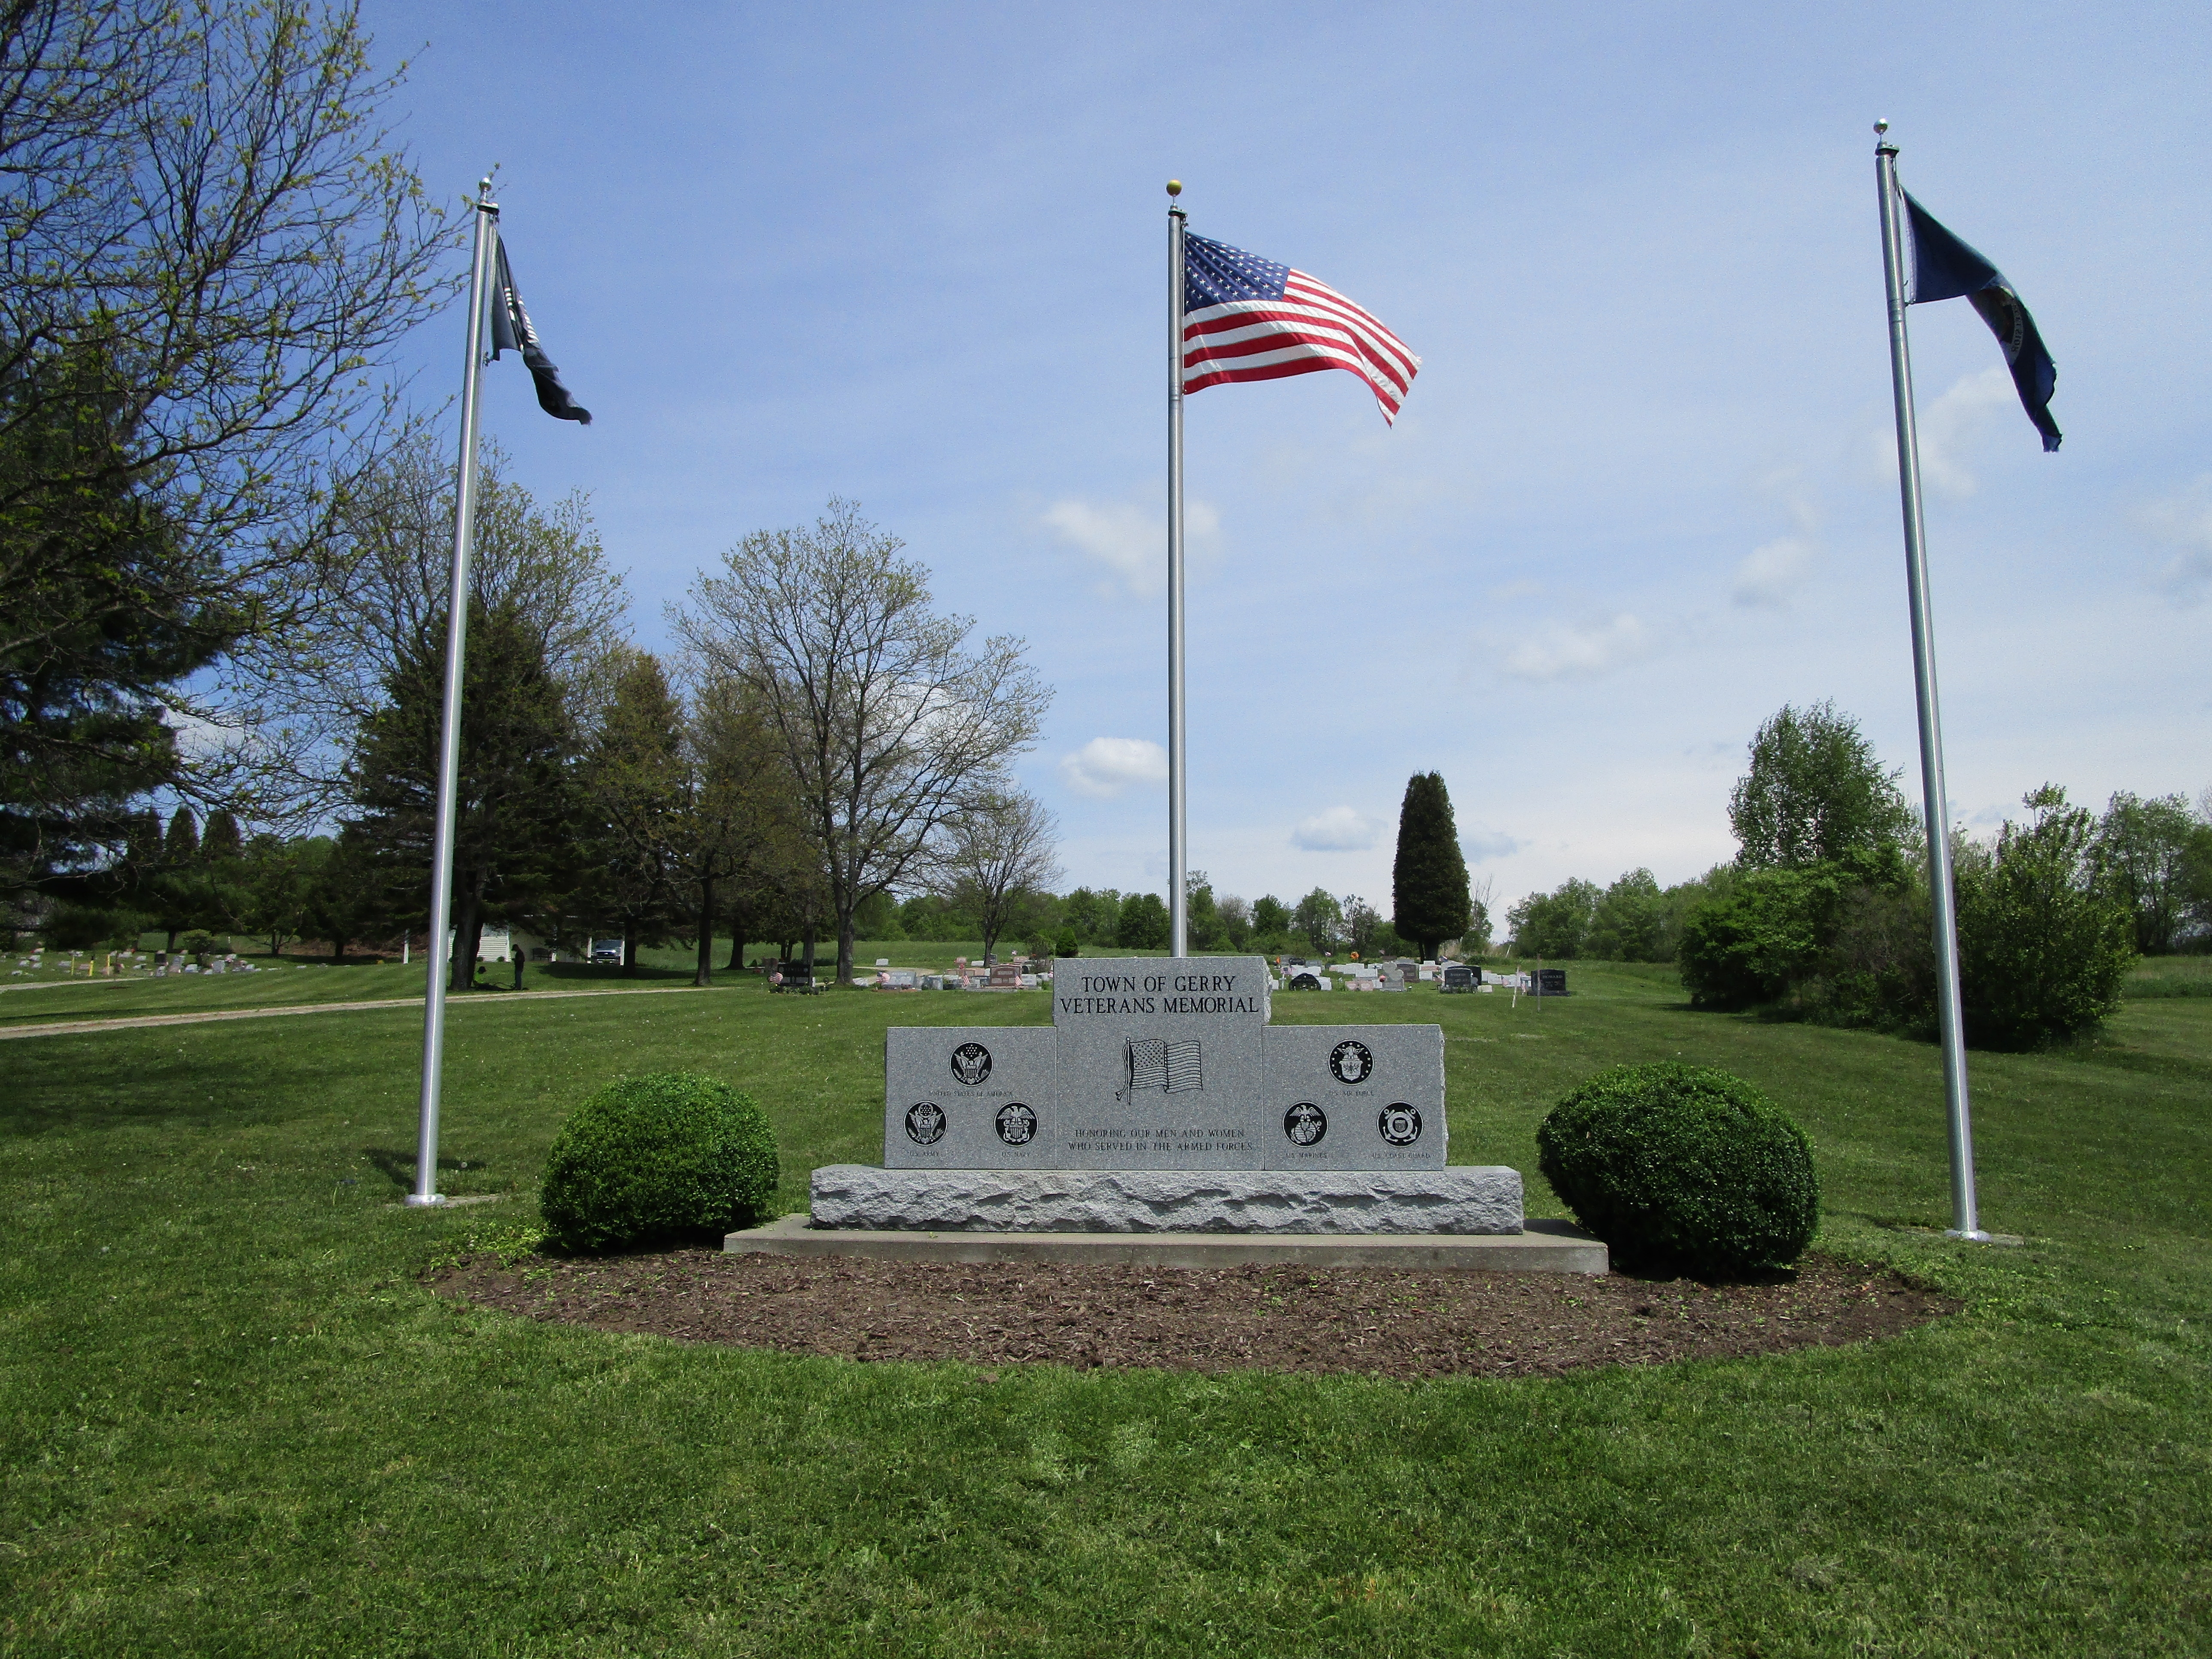 Town of Gerry Veterans Memorial